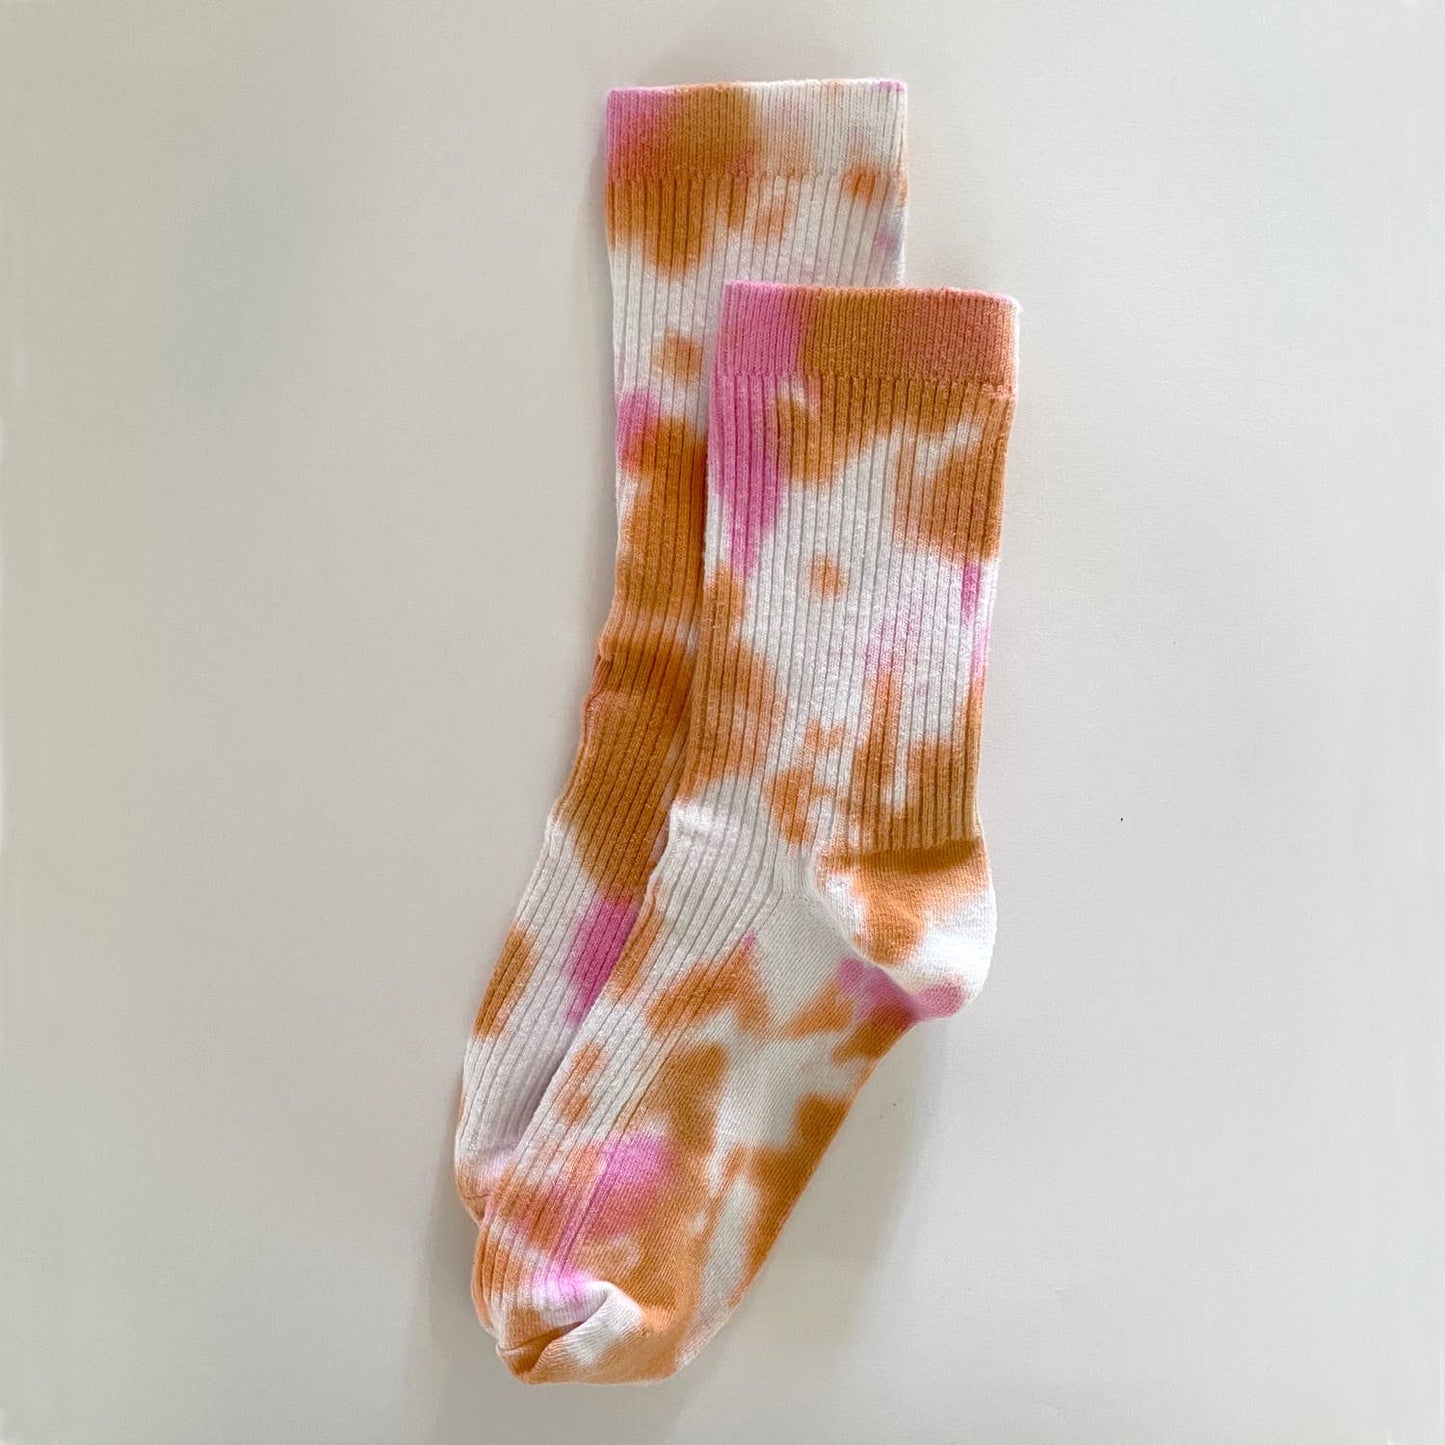 Dusty Tie-Dye Dressy Socks (Women’s) - The Crowd Went Wild